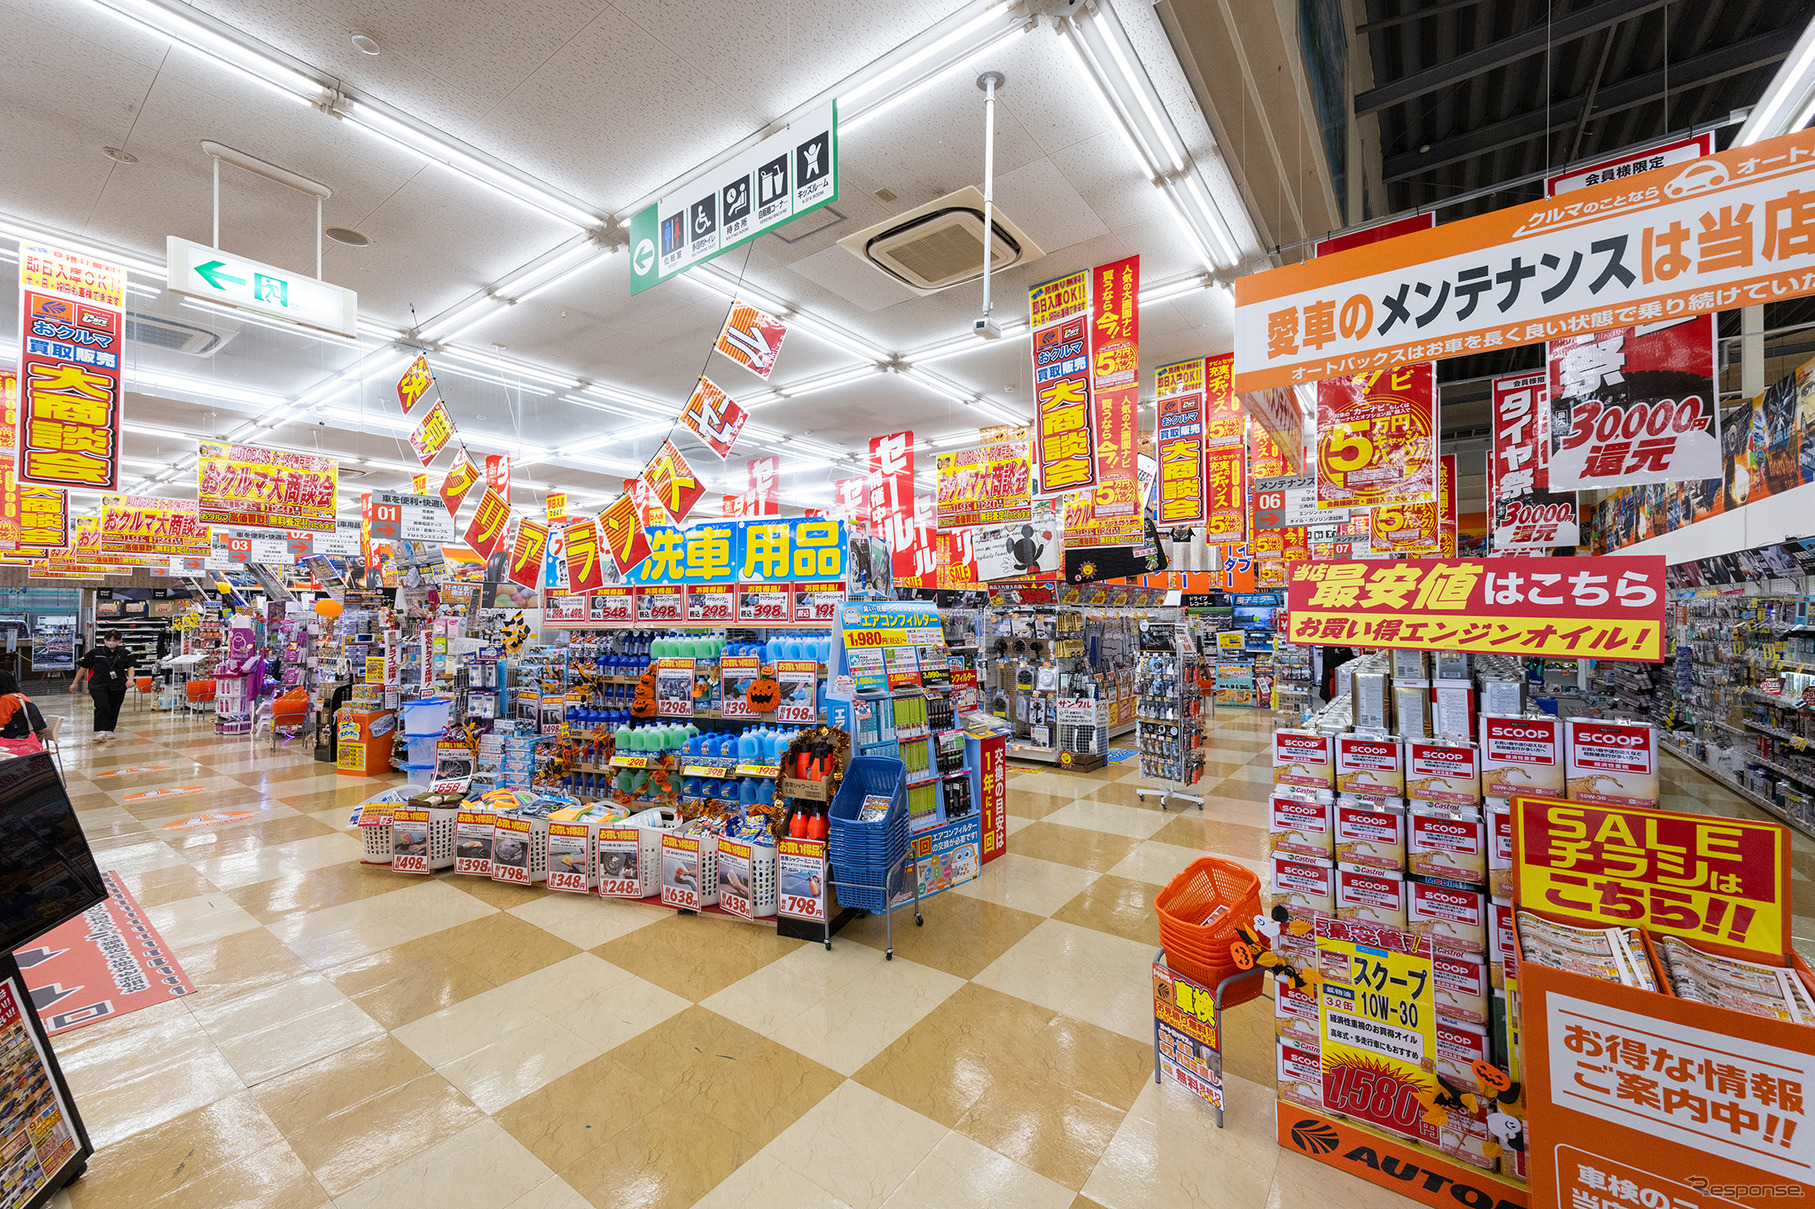 スーパーオートバックス神戸三田インター店、広々とした店内でゆっくりショッピングを楽しめる